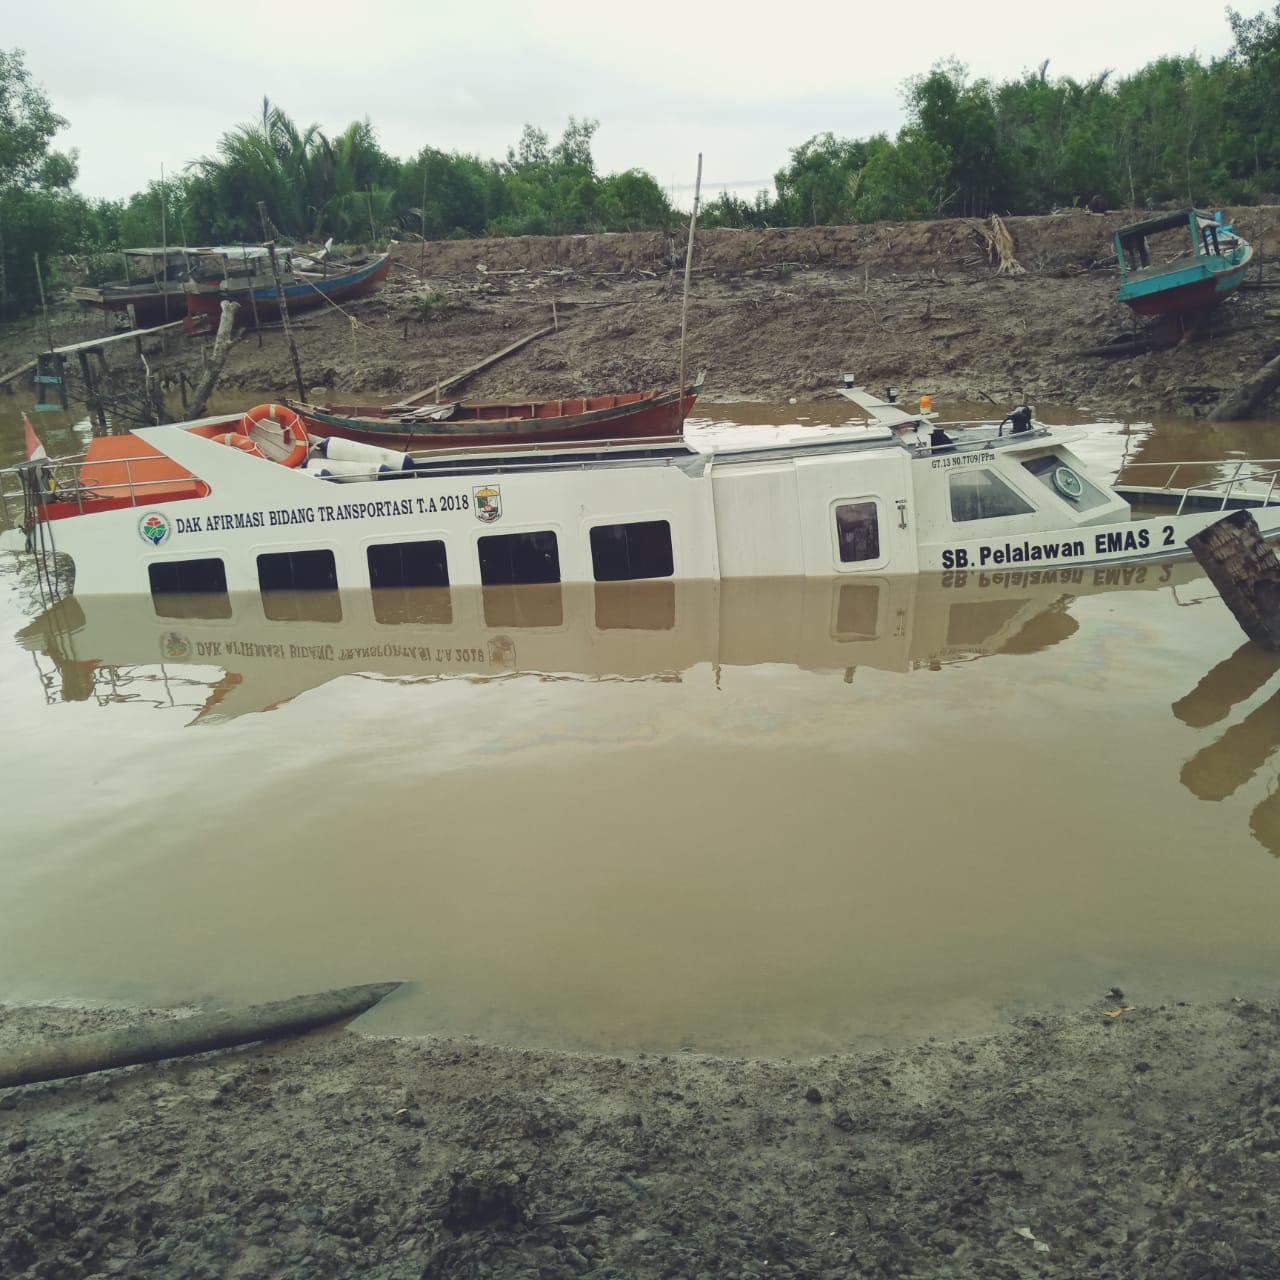 Diduga Bodi Kapal Sudah Bocor, Speed Boat Karam Ternyata Bantuan untuk Desa Serapung